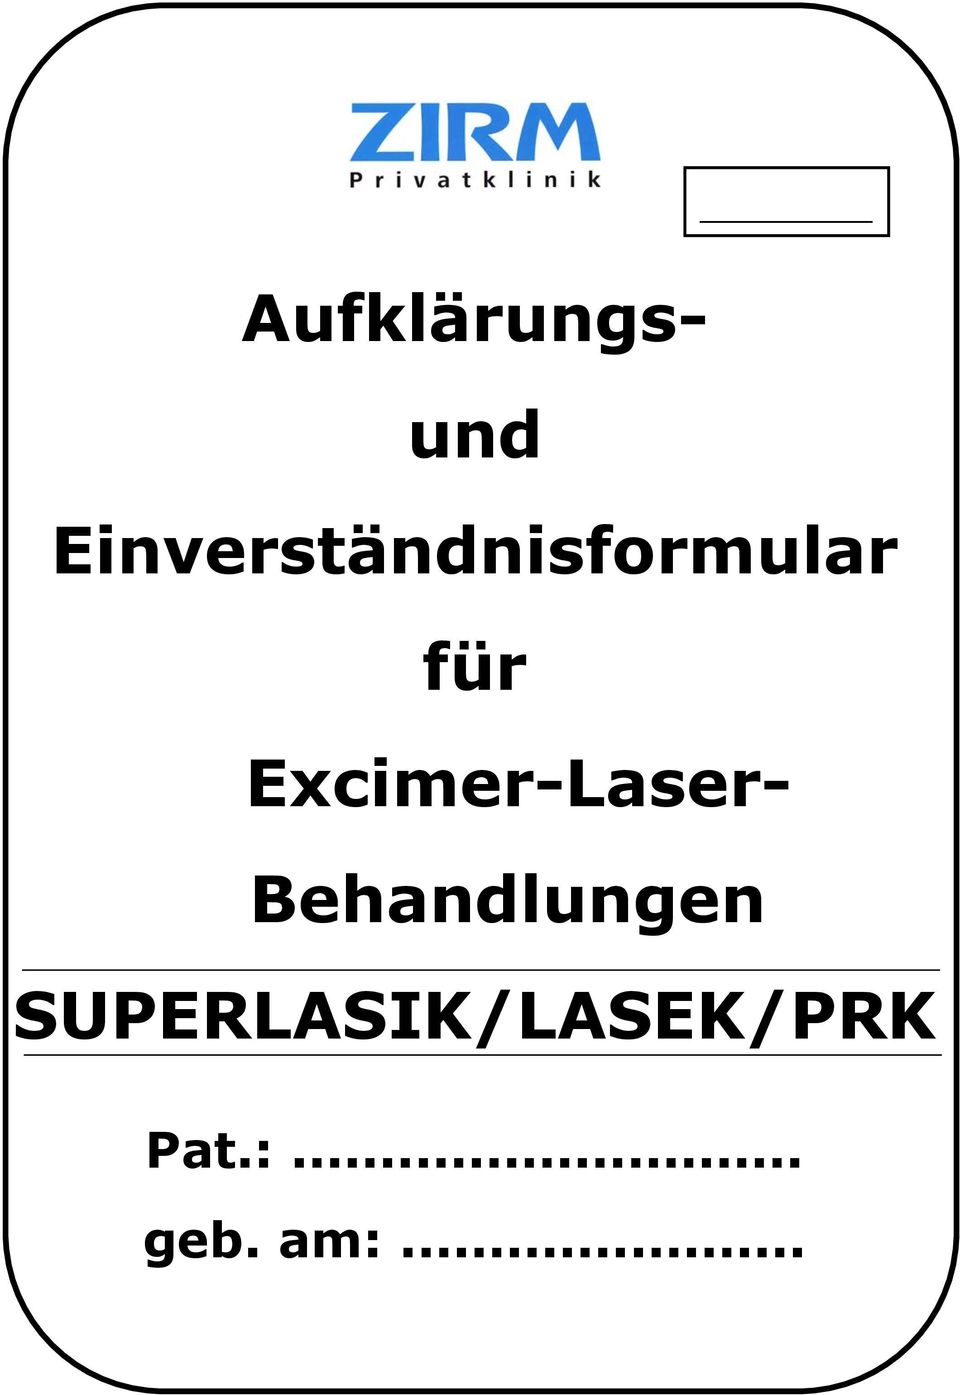 Excimer-Laser- Behandlungen